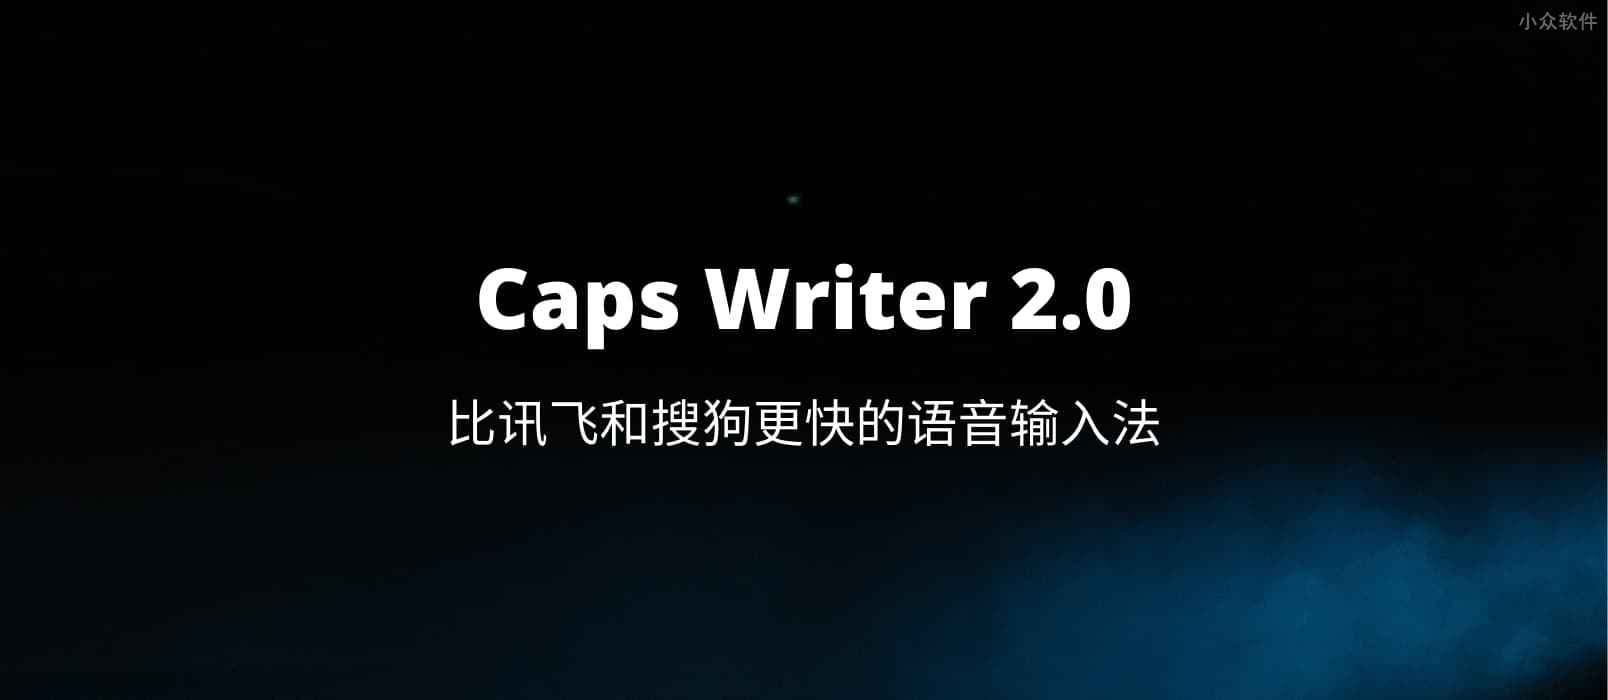 Caps Writer 2.0 - 比讯飞和搜狗更快的语音输入法[Win]